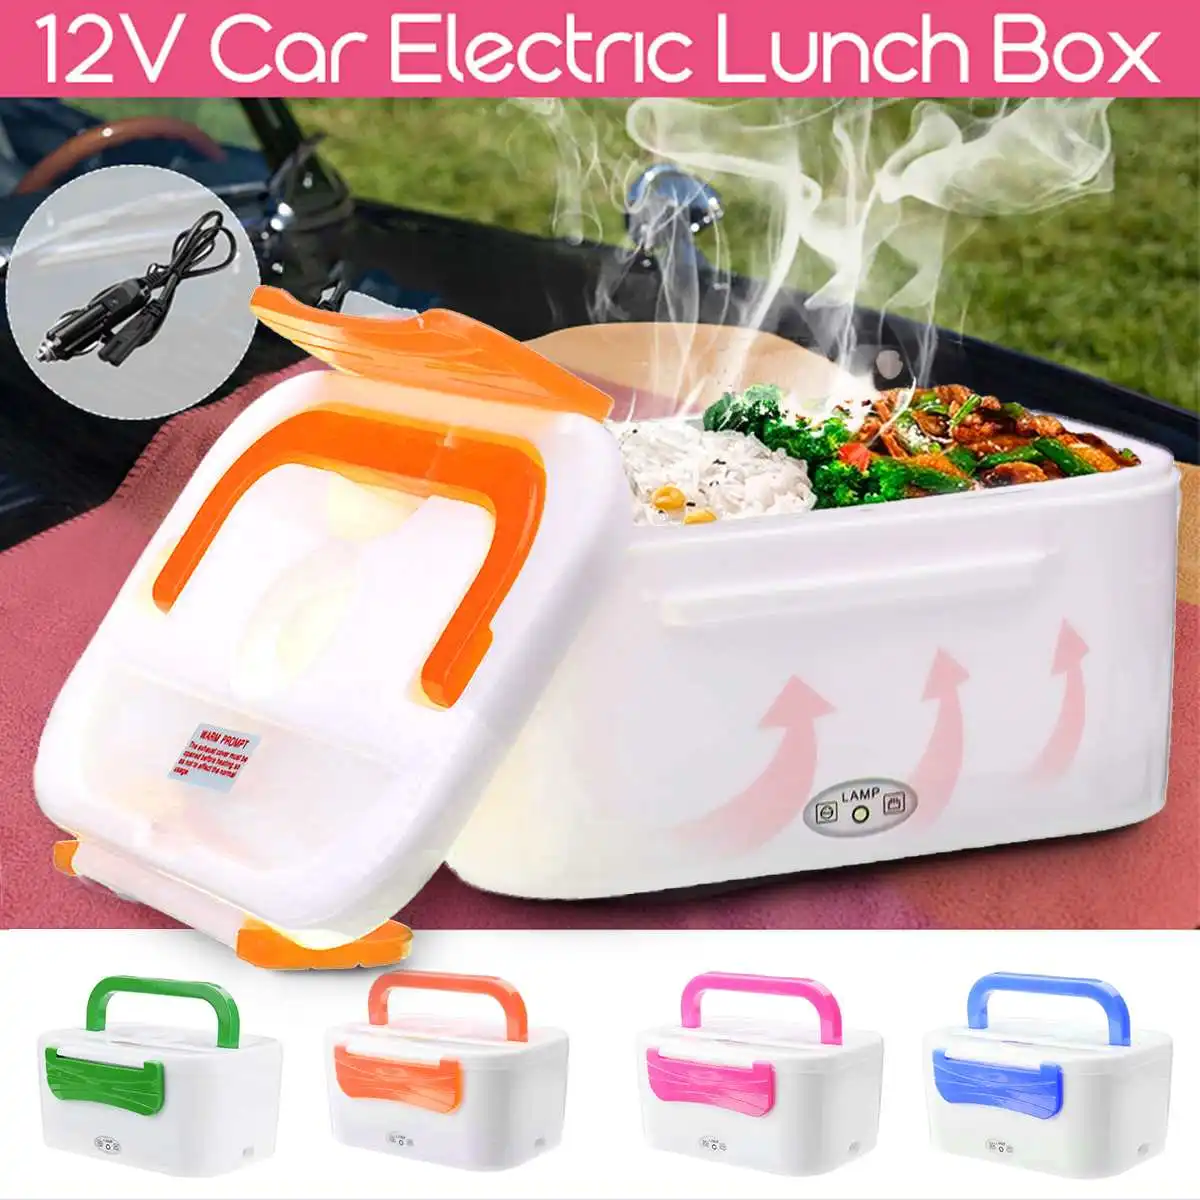 Электрический нагревательный автомобильный Ланч-бокс 12 В, портативный контейнер для хранения еды, контейнер для подогрева пищи, контейнер для школы, офиса, дома, столовая посуда